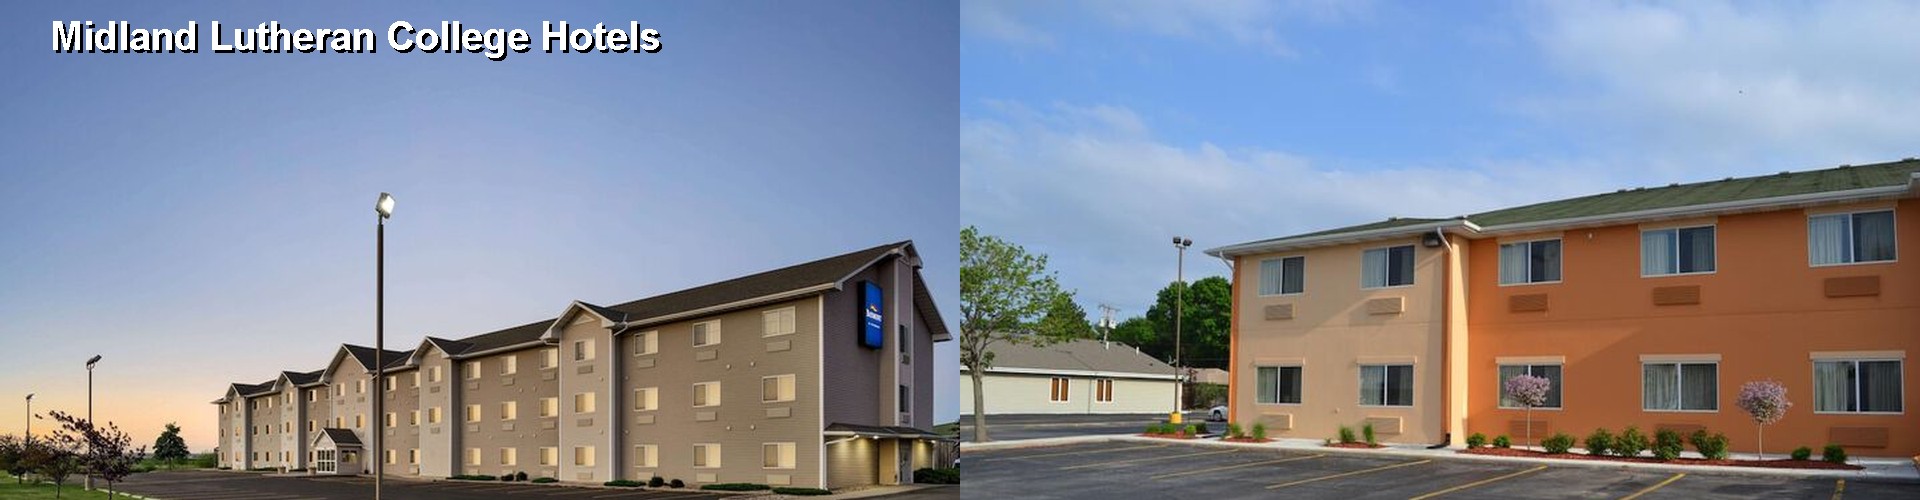 5 Best Hotels near Midland Lutheran College